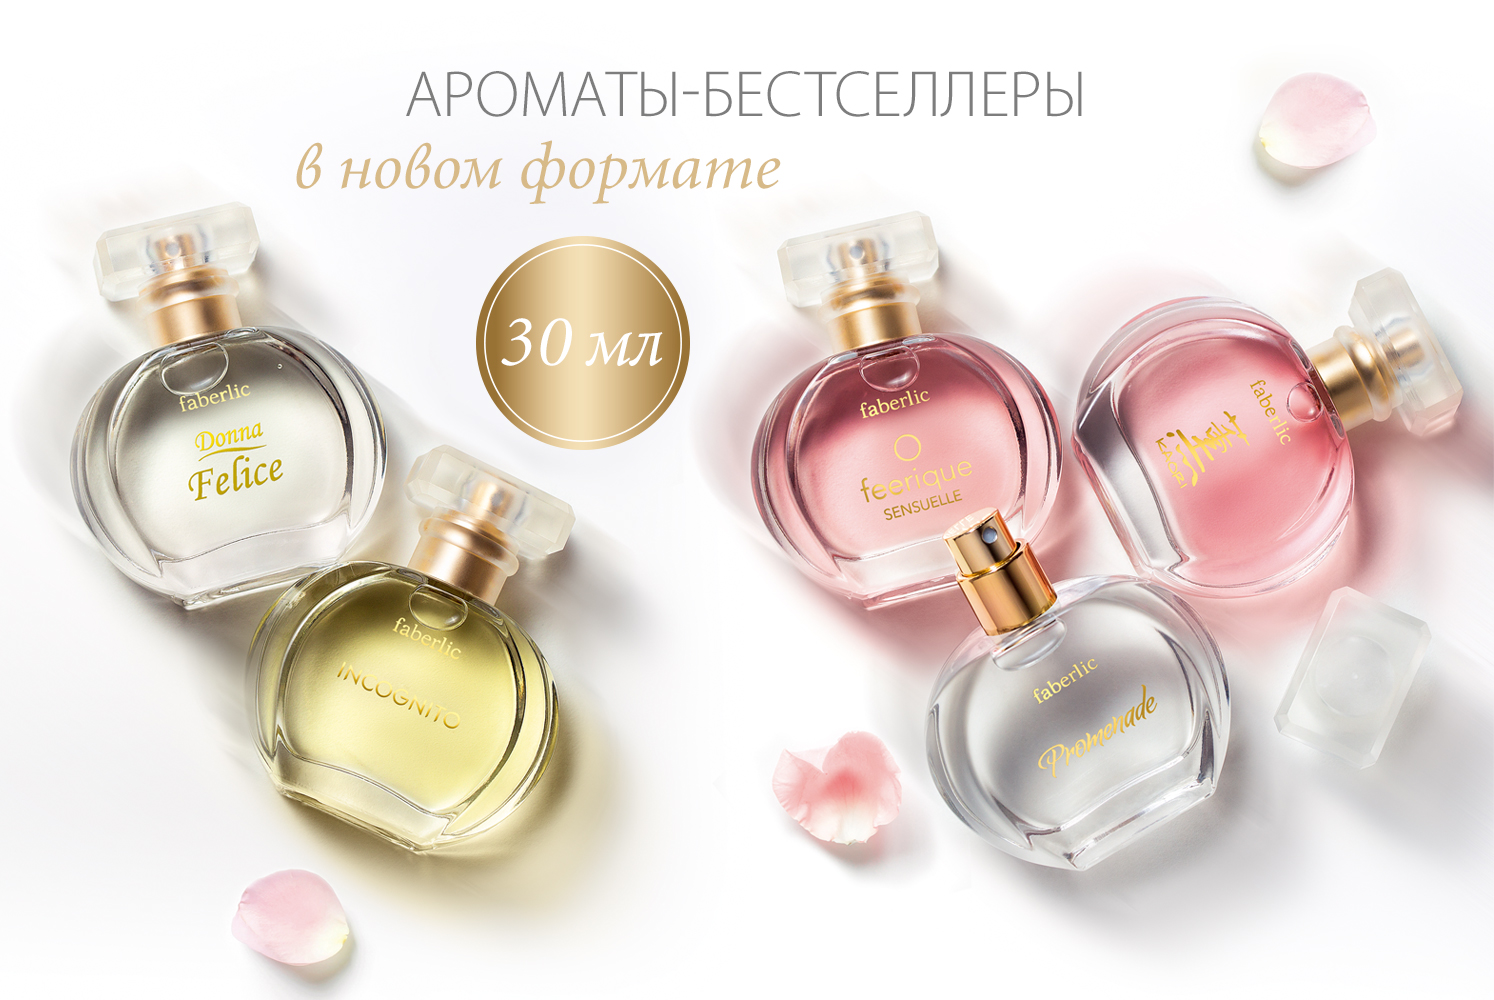 Ваши любимые ароматы теперь в новом формате!